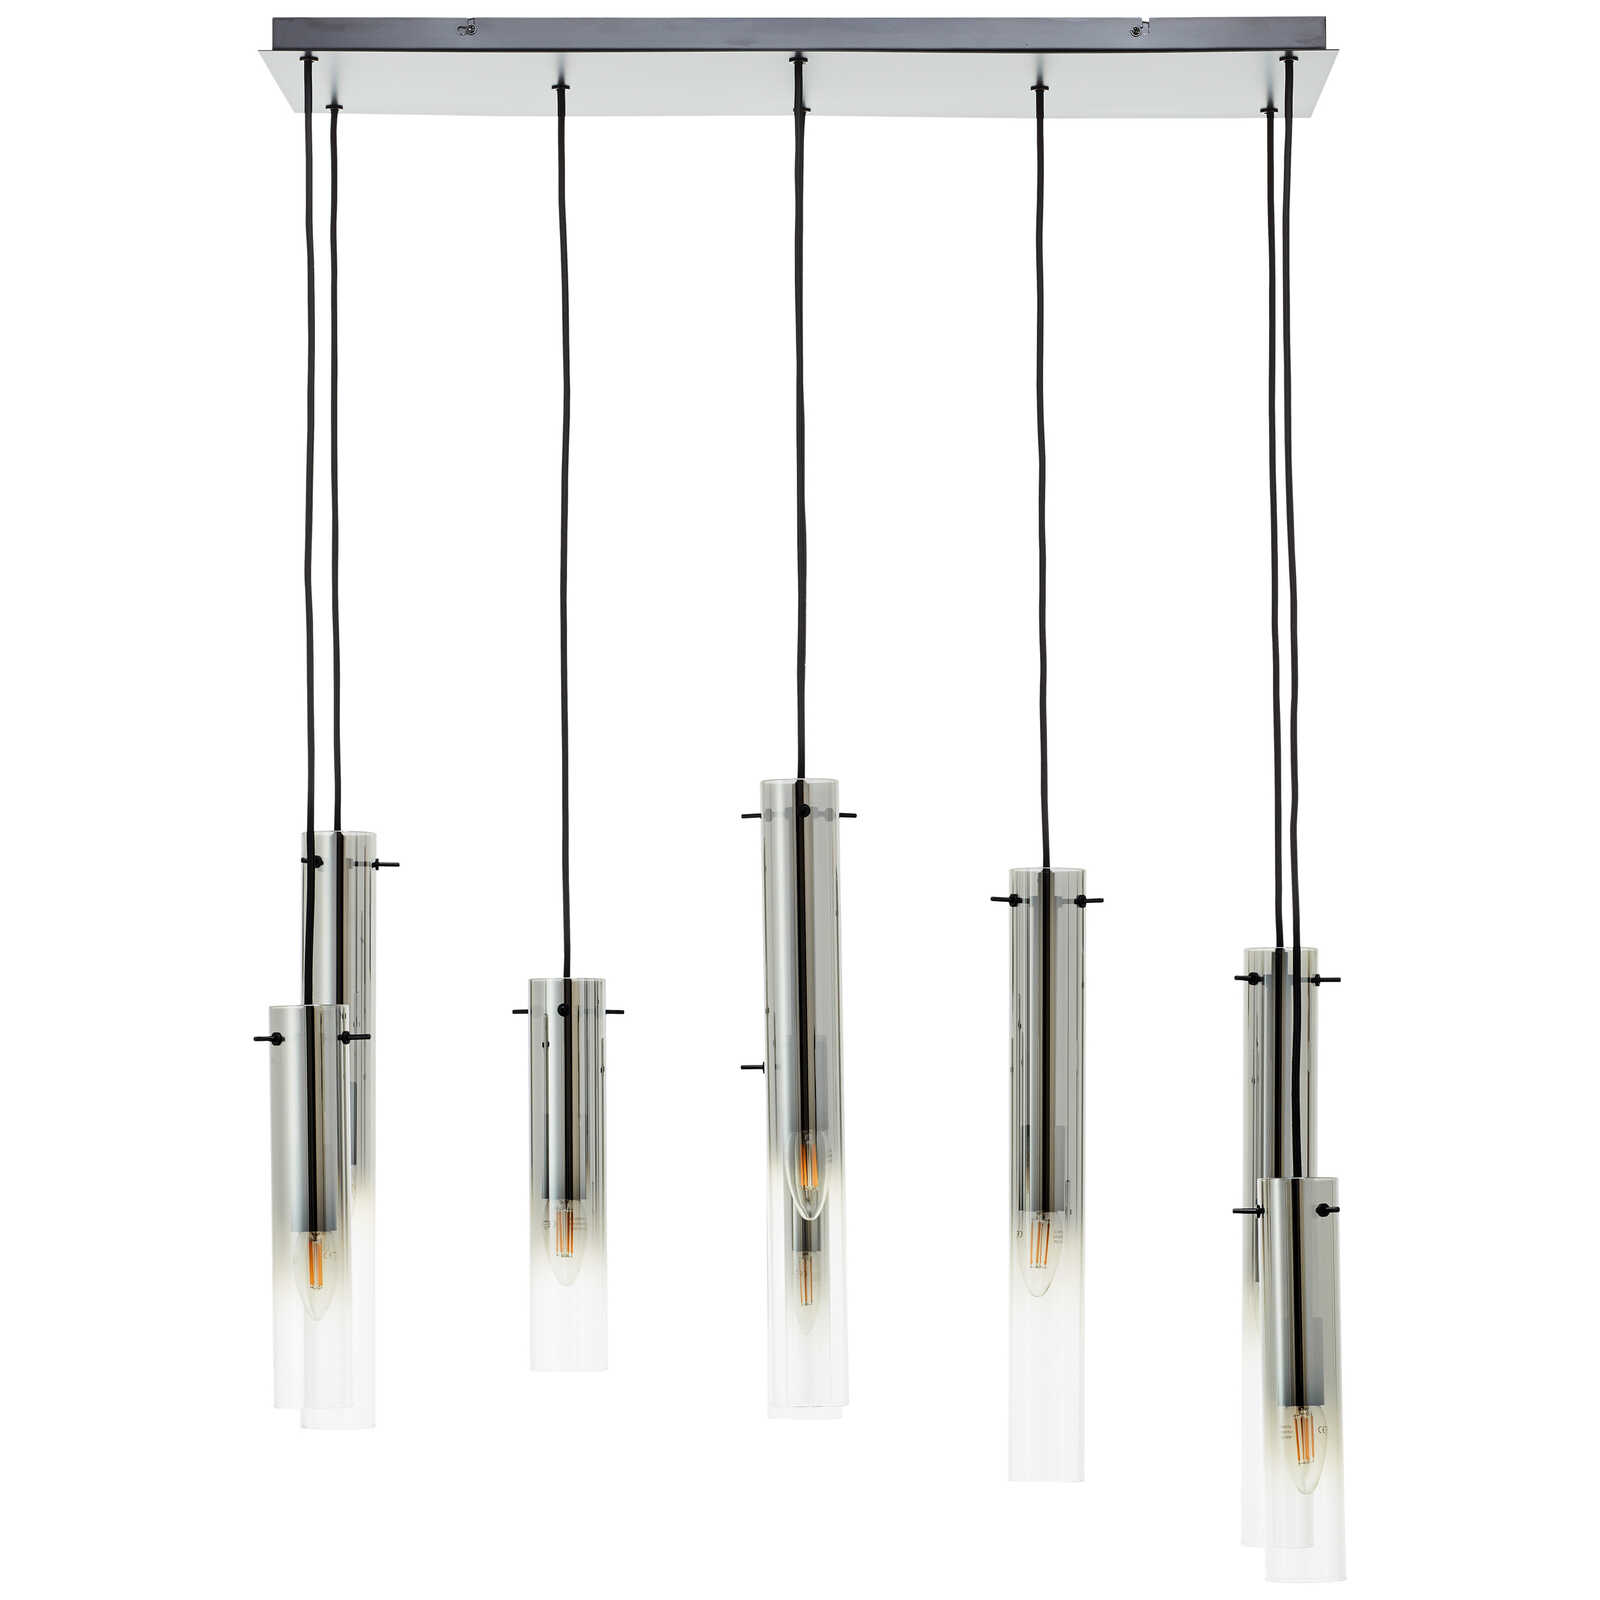             Metalen hanglamp - Hilla 4 - Grijs
        